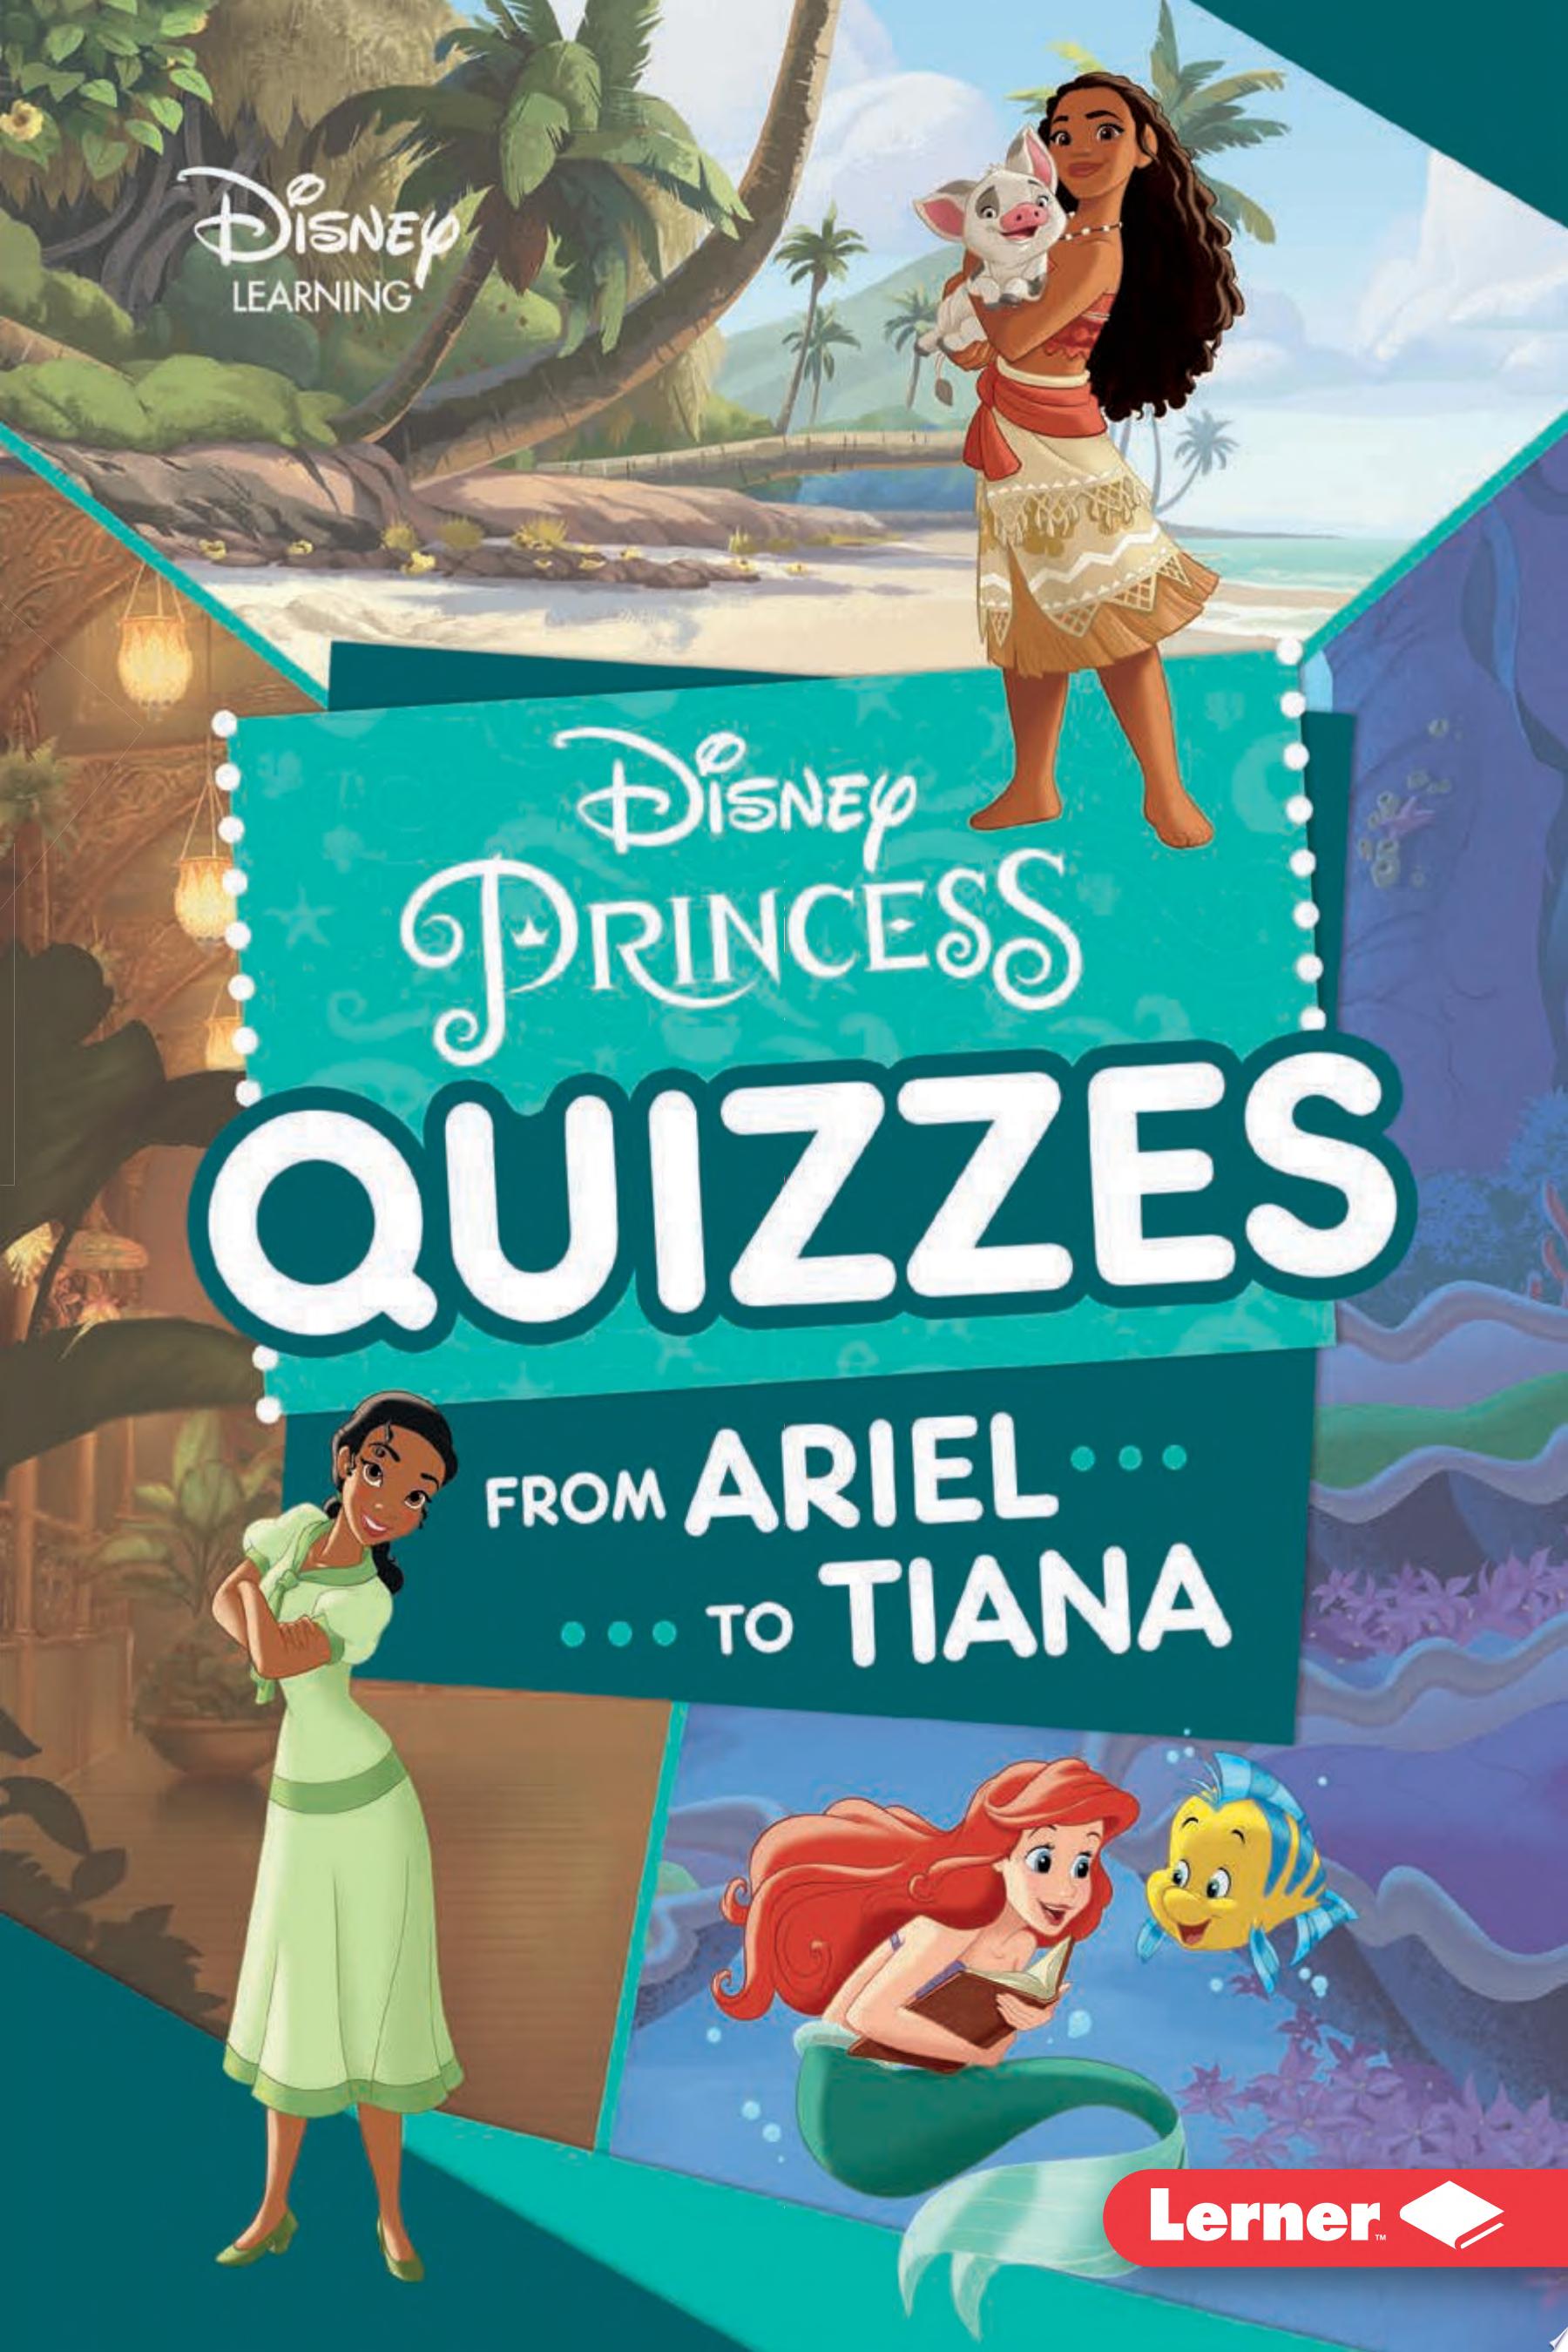 Image for "Disney Princess Quizzes"